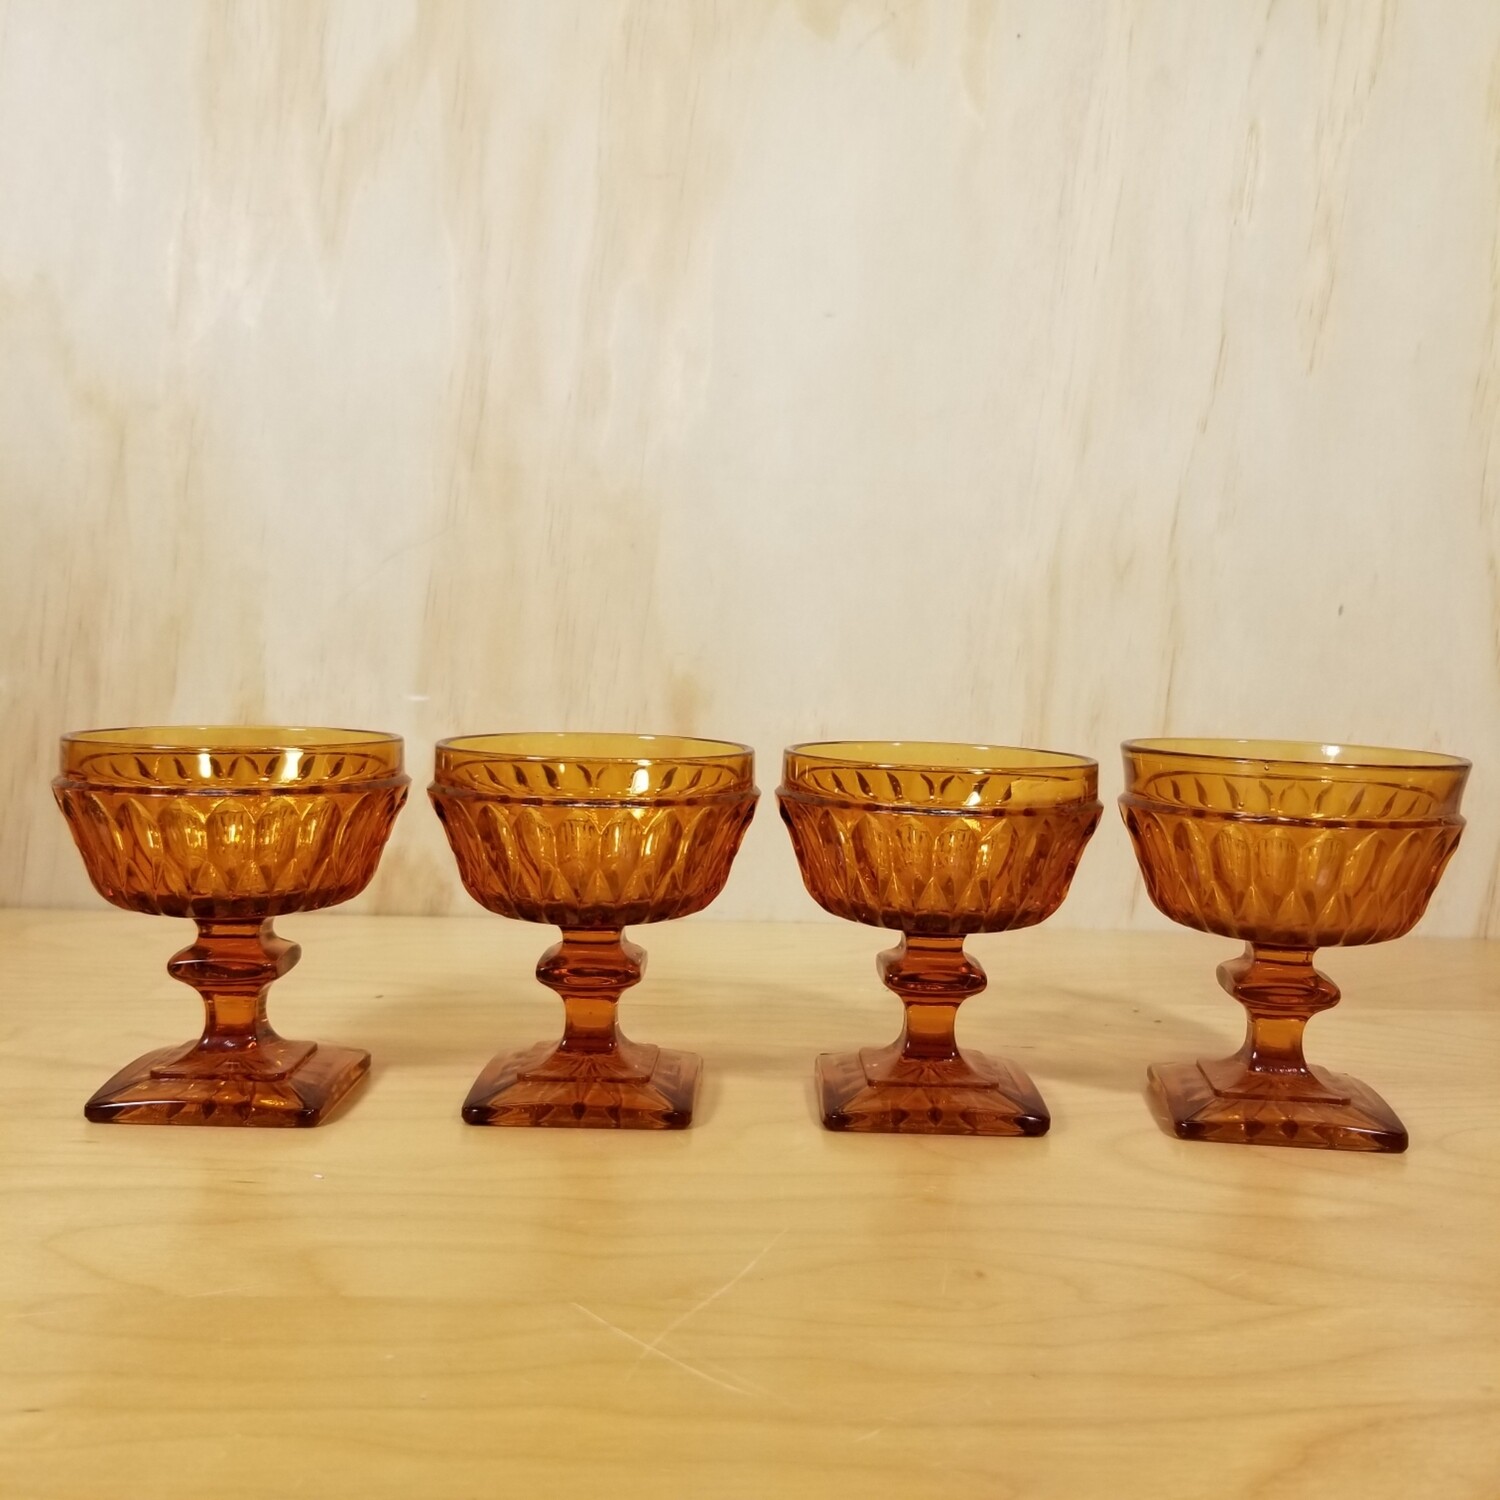 4 Amber Glass Desert Cups